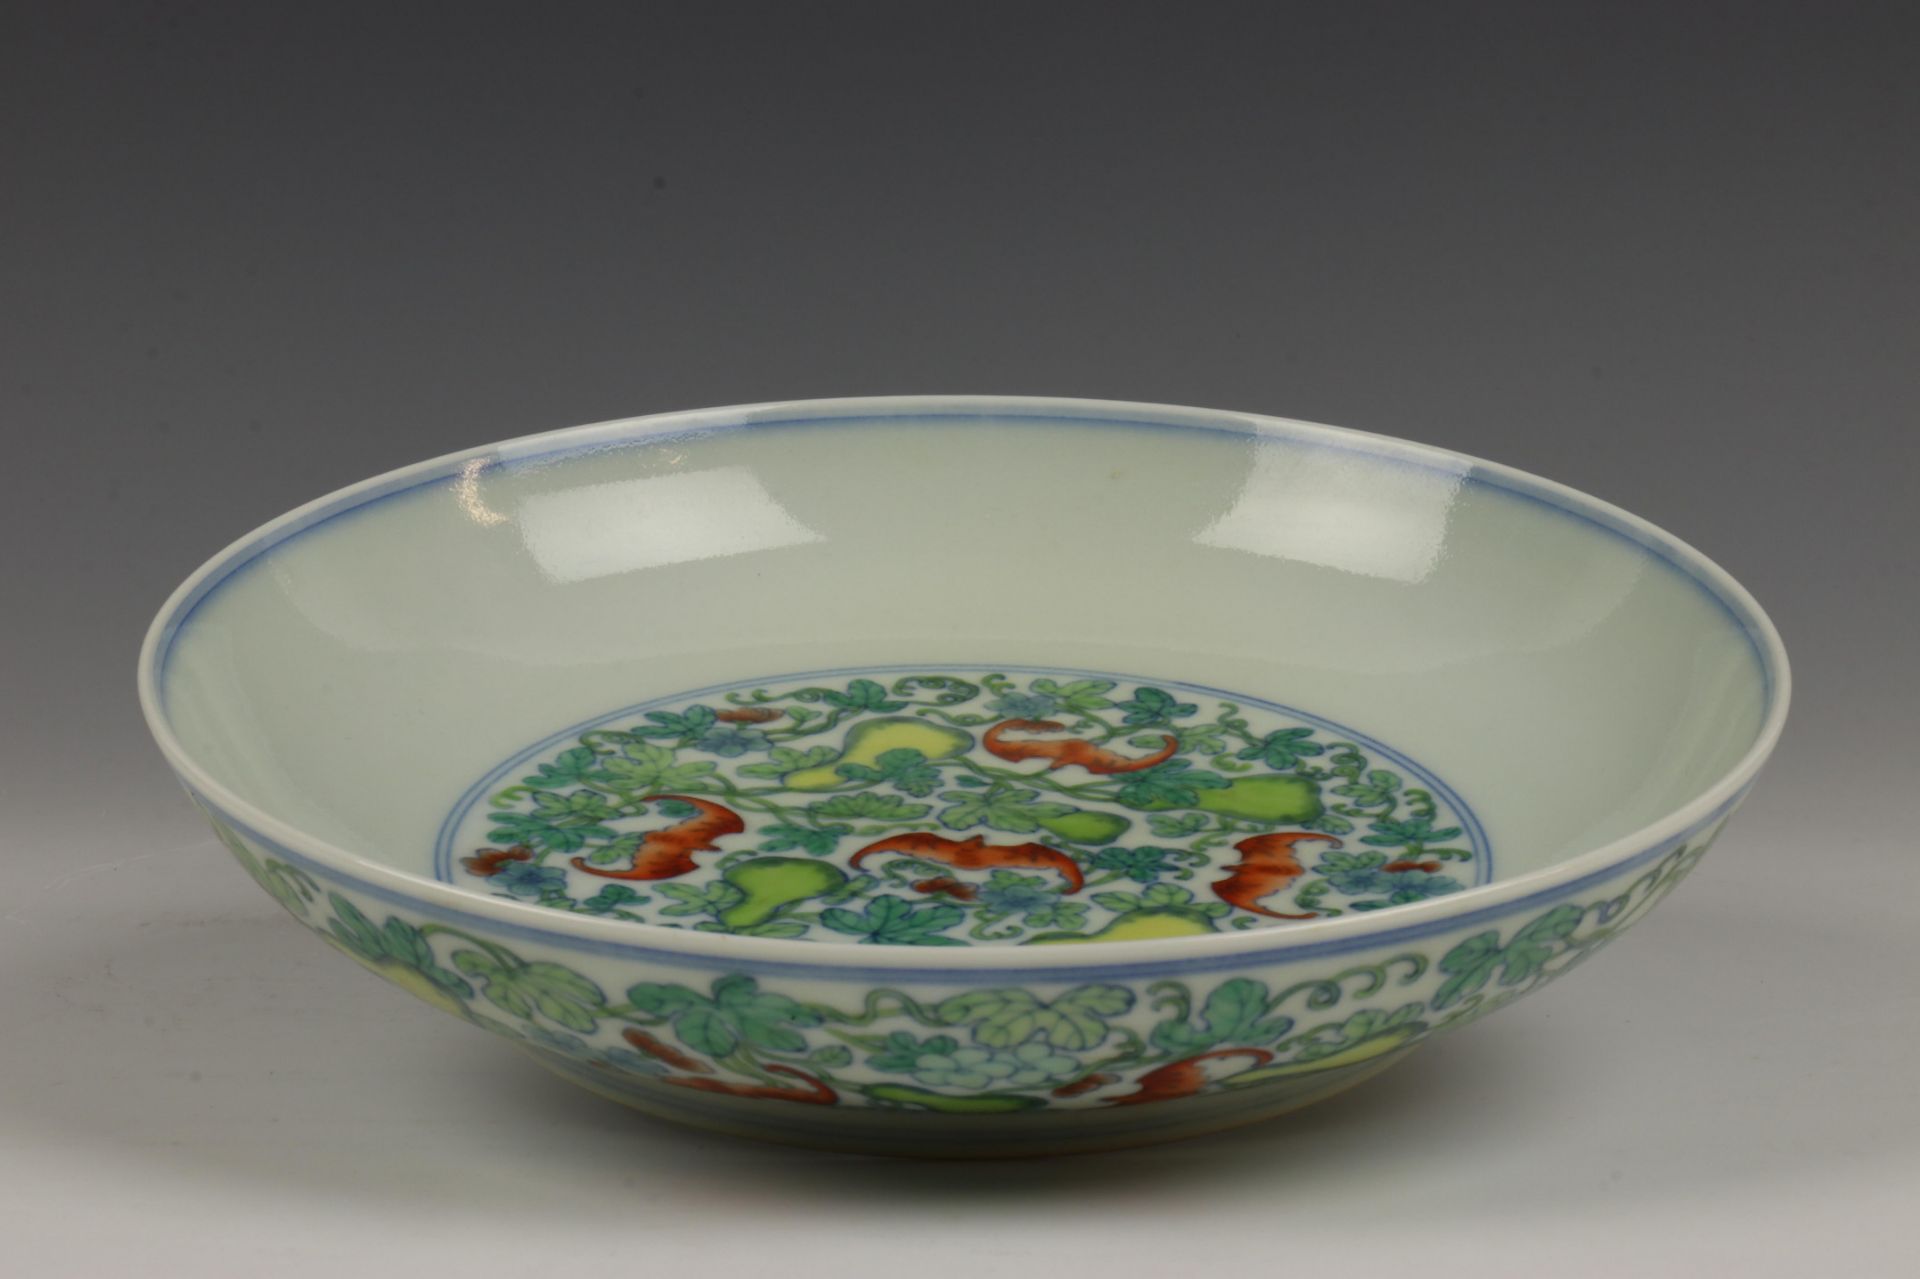 China, doucai porseleinen bord, 20e eeuw, - Image 2 of 4